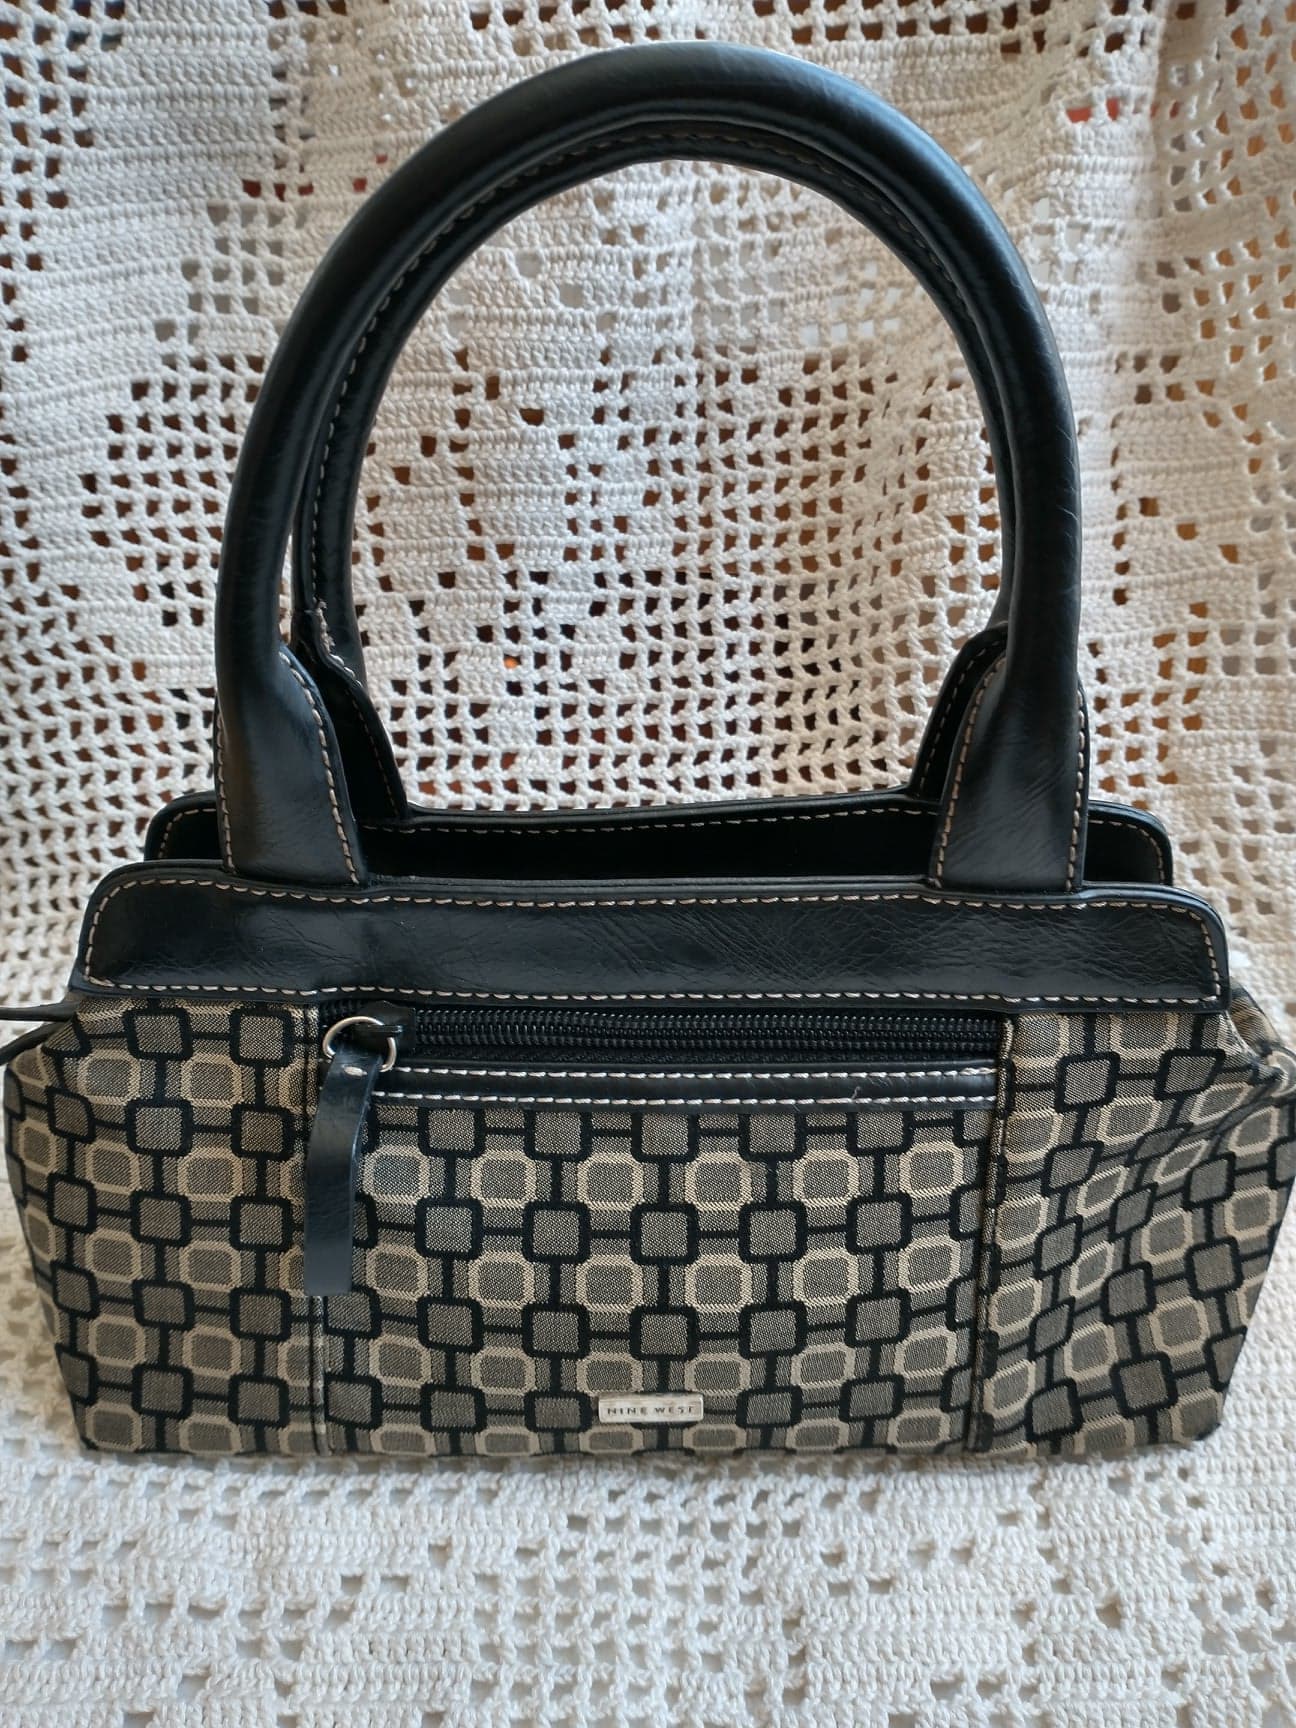 Nine West Black Bags & Handbags for Women for sale | eBay